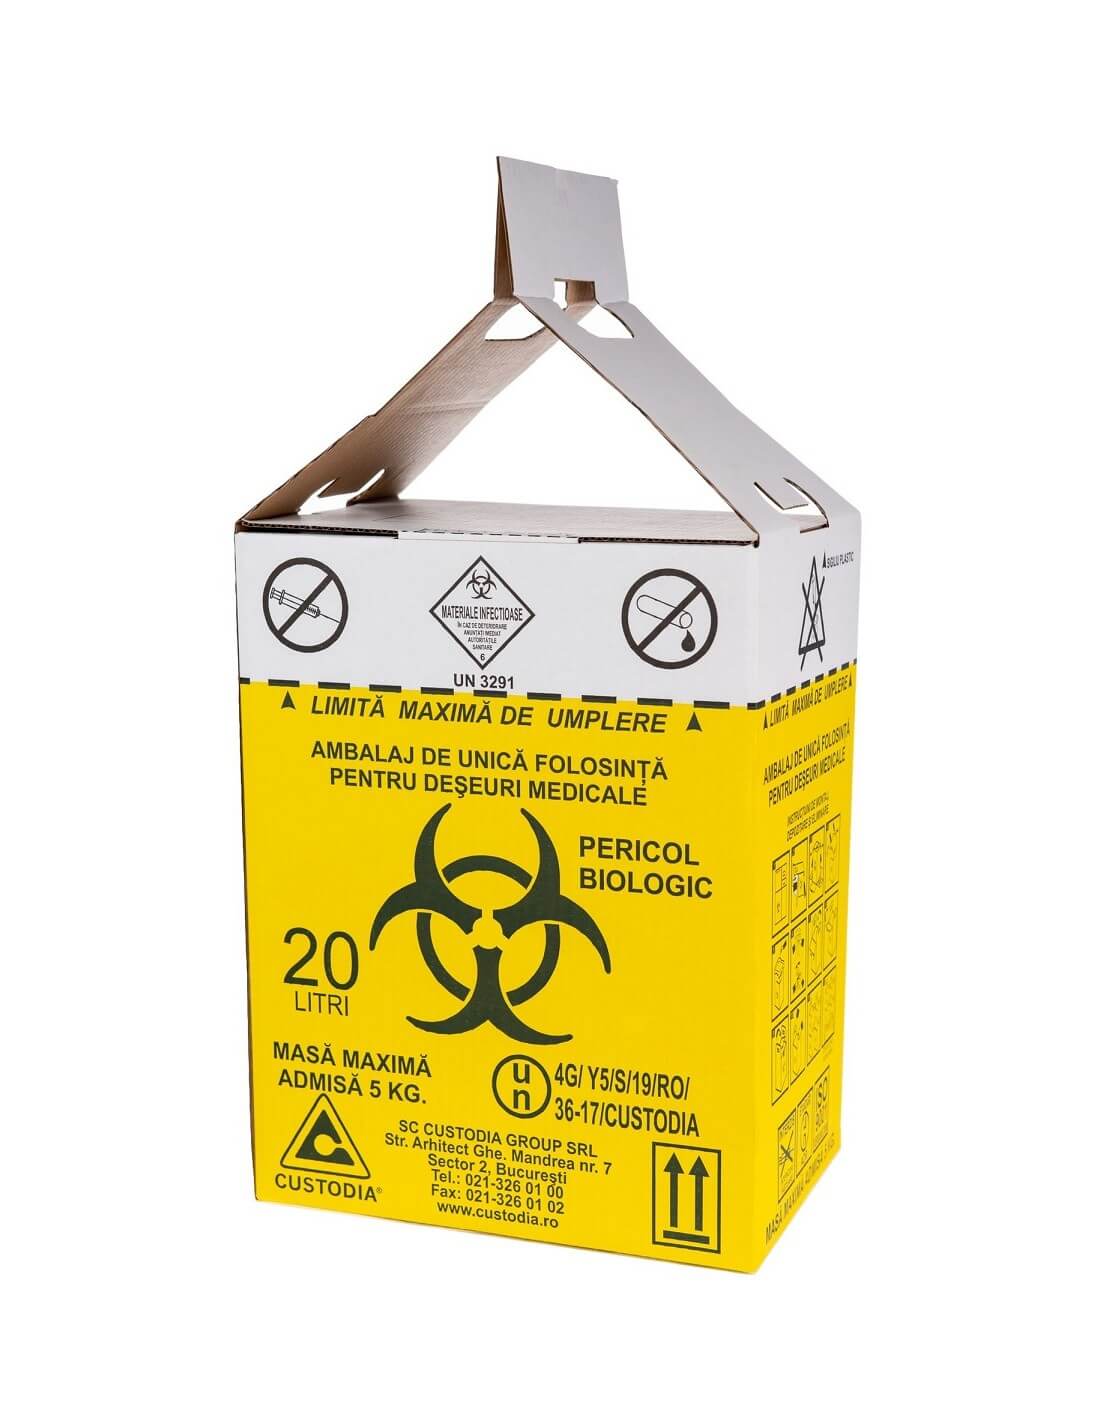 Cutii carton pentru deseuri medicale infectioase cu saci inclusi 20L 1